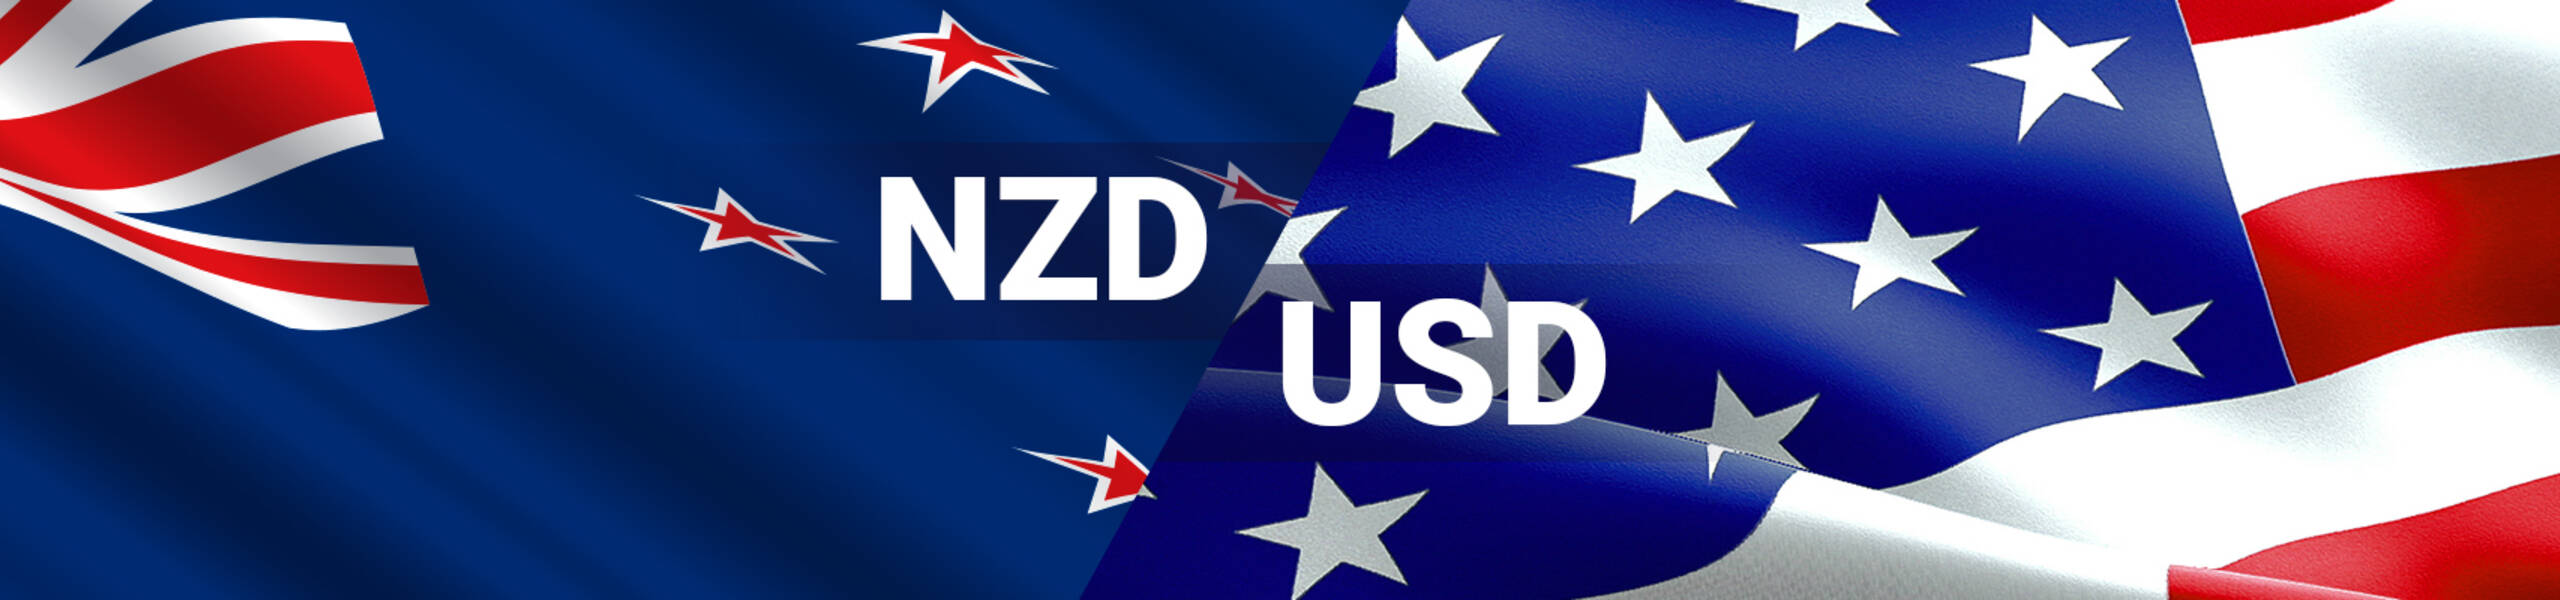 NZDUSD terus menurun - Analisis - 04-07-2017